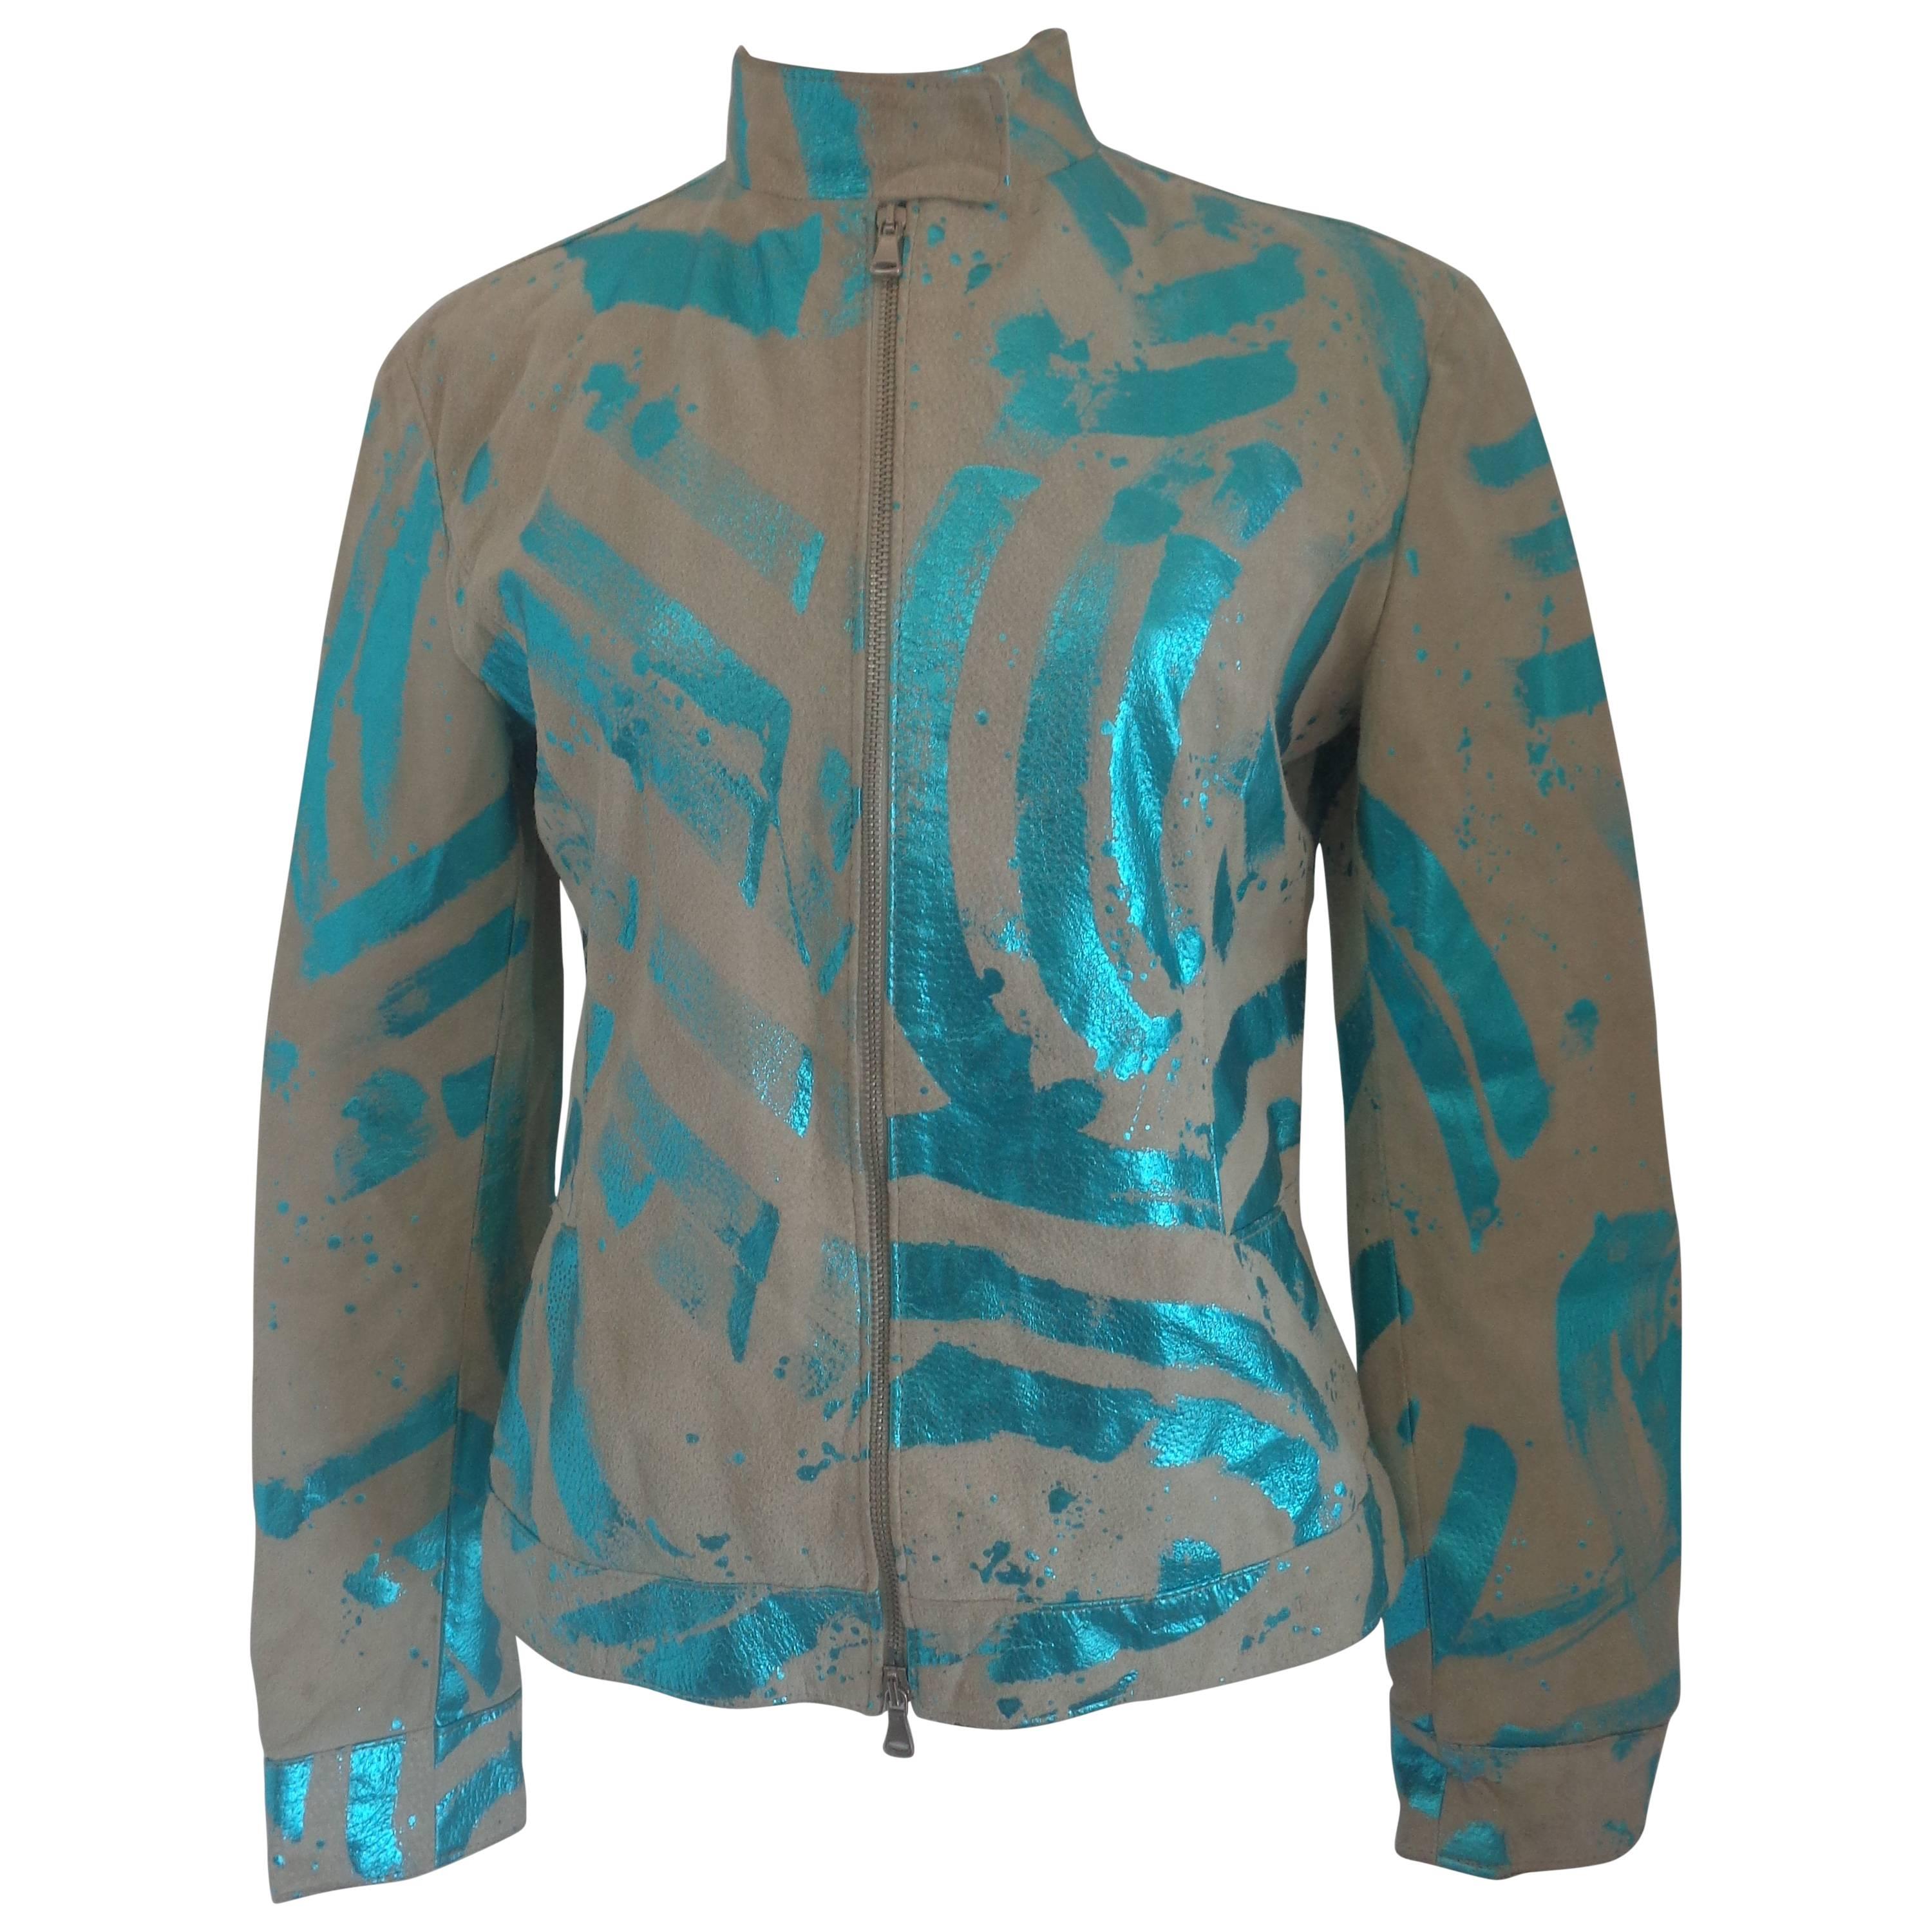 Vintage Beije Turquoise print Leather Jacket